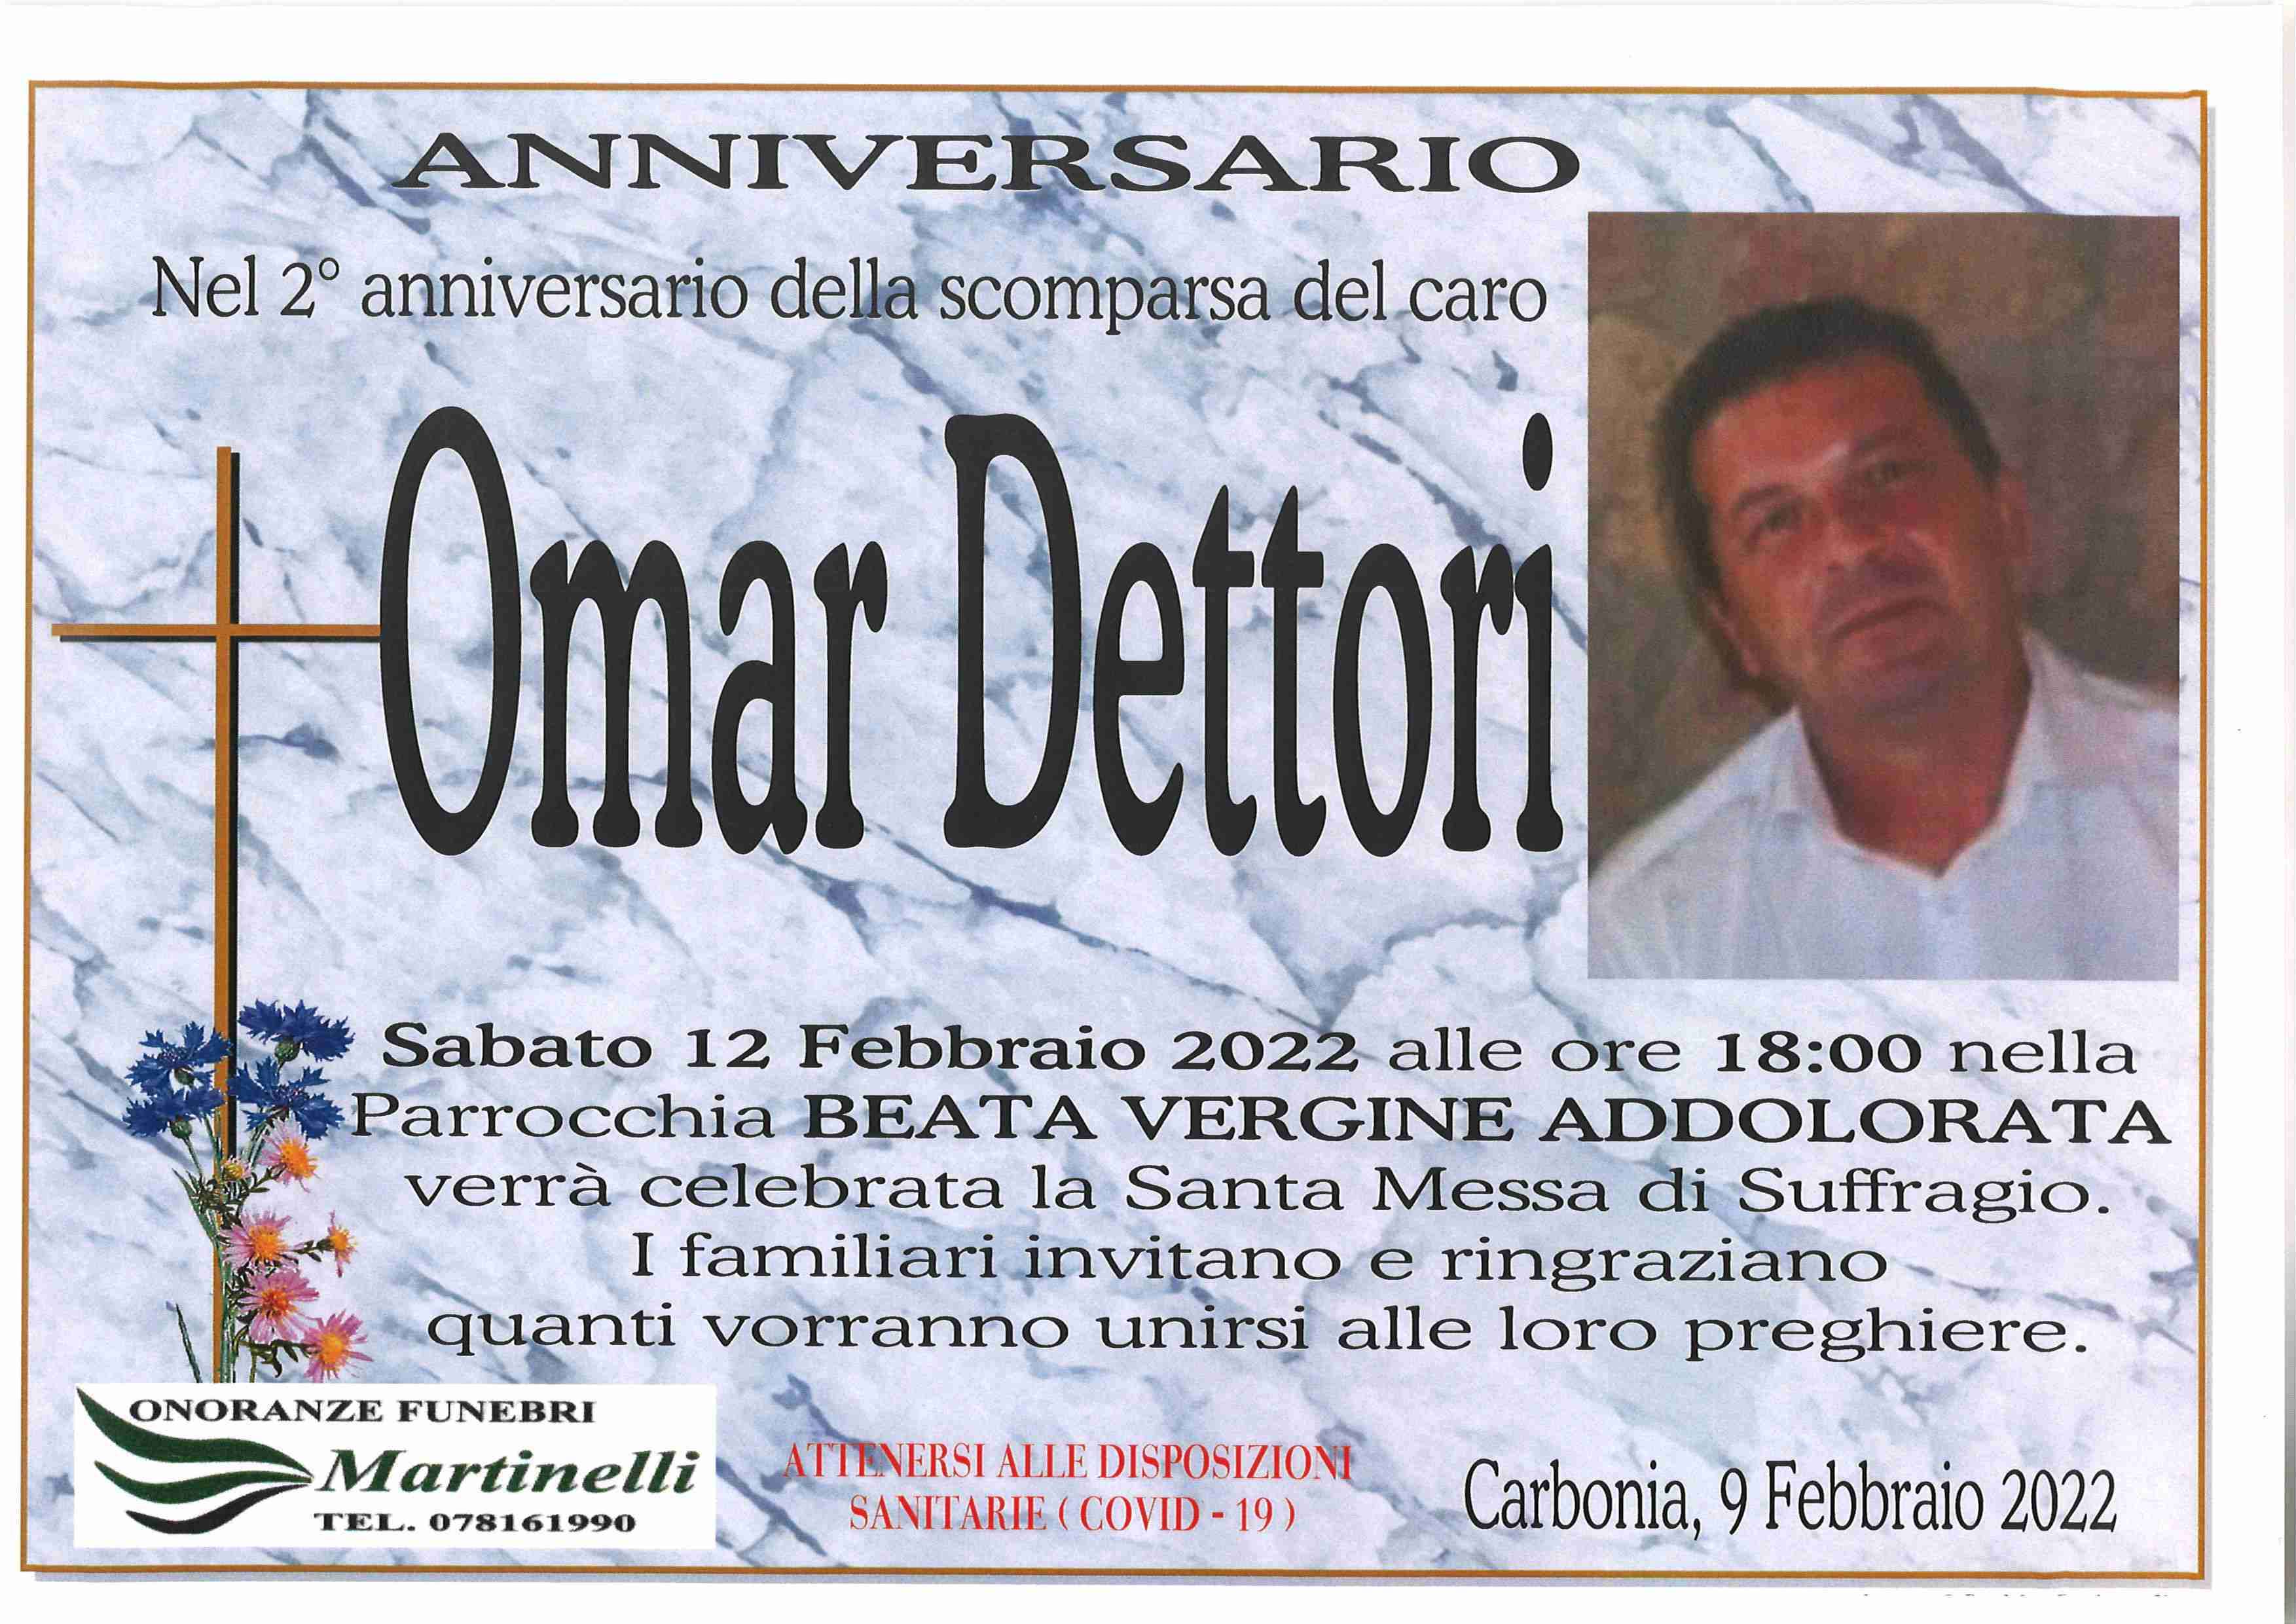 Omar Dettori